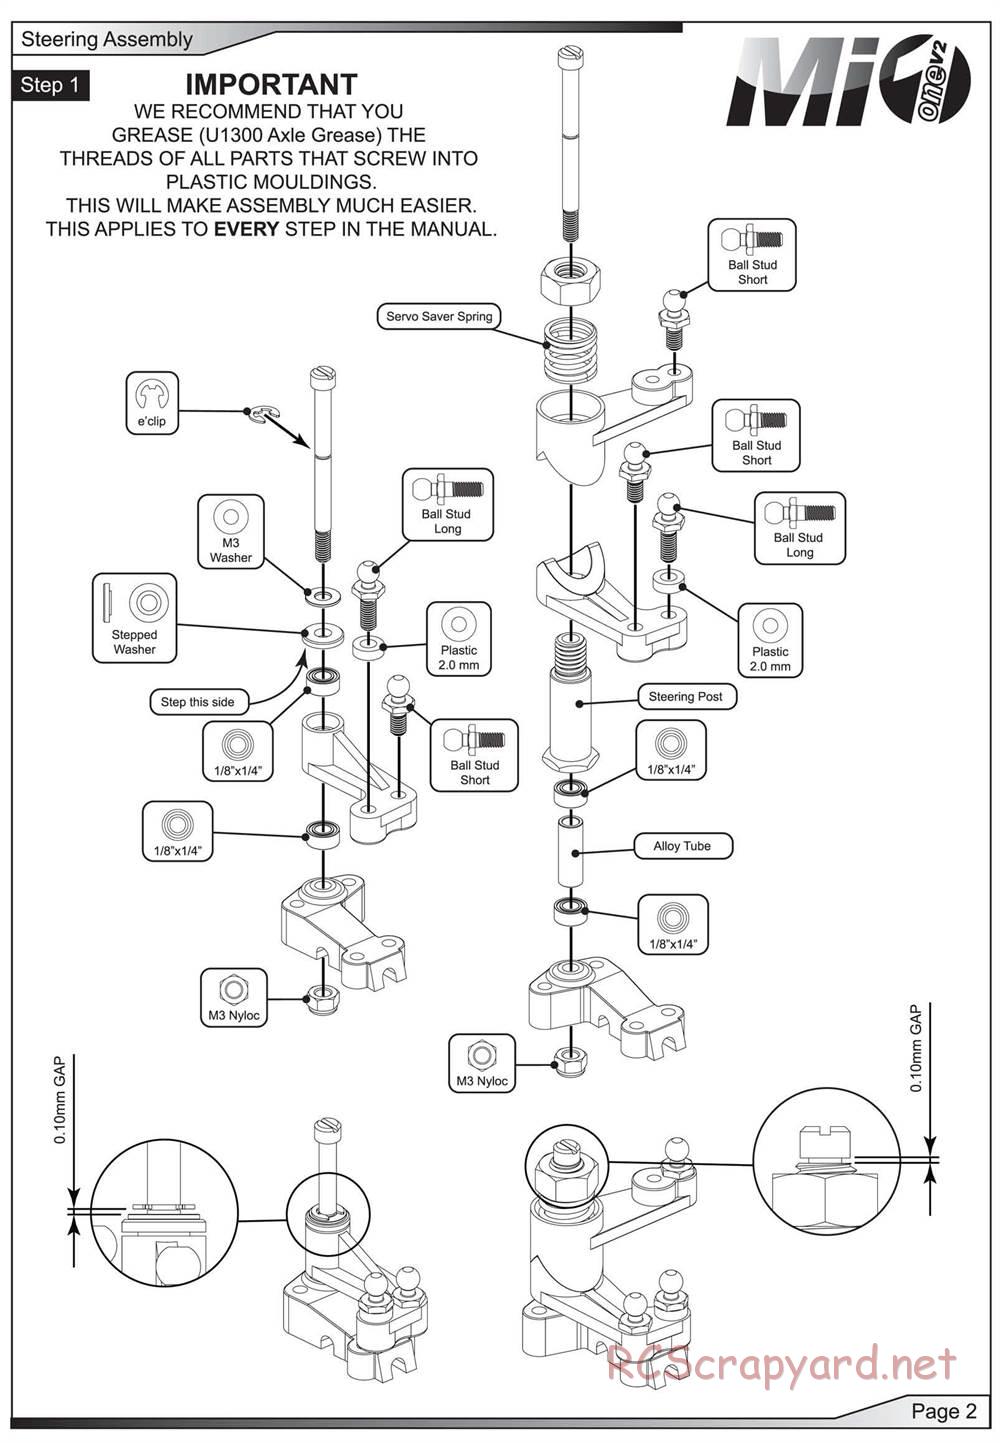 Schumacher - Mi1v2 - Manual - Page 3